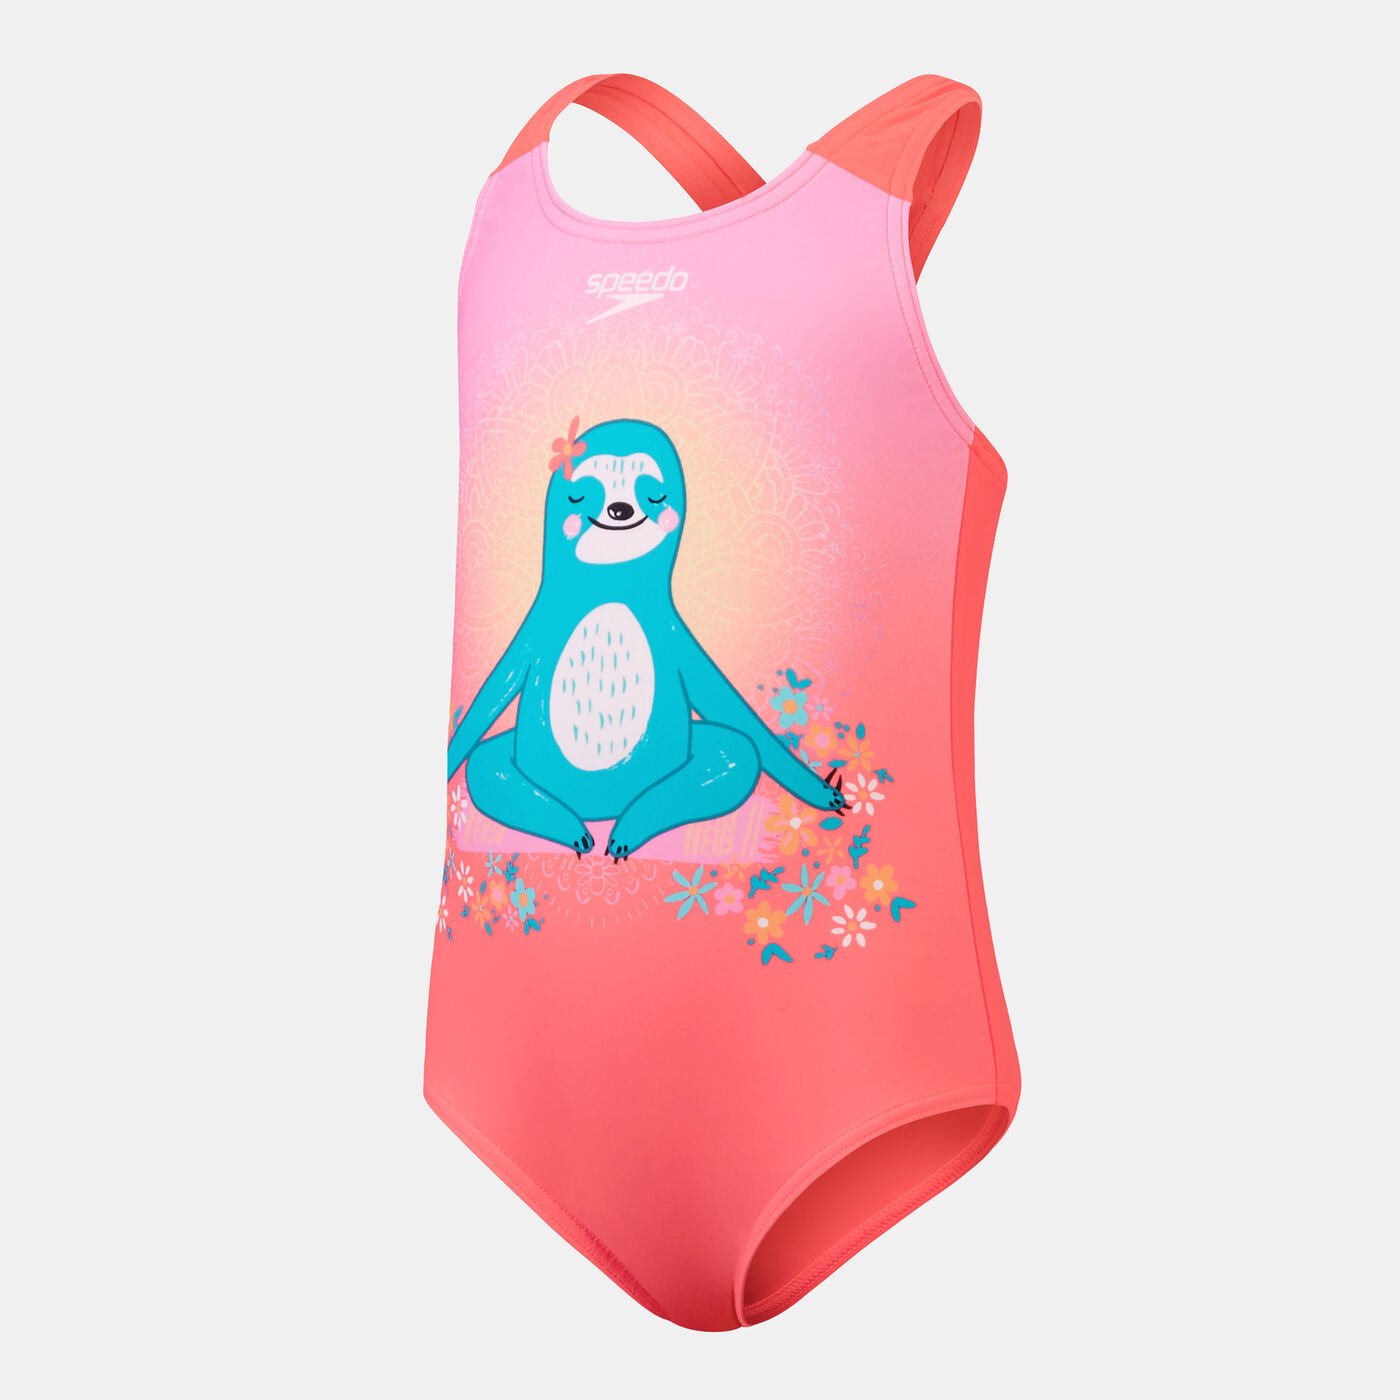 Kids' Digital Printed Swimsuit